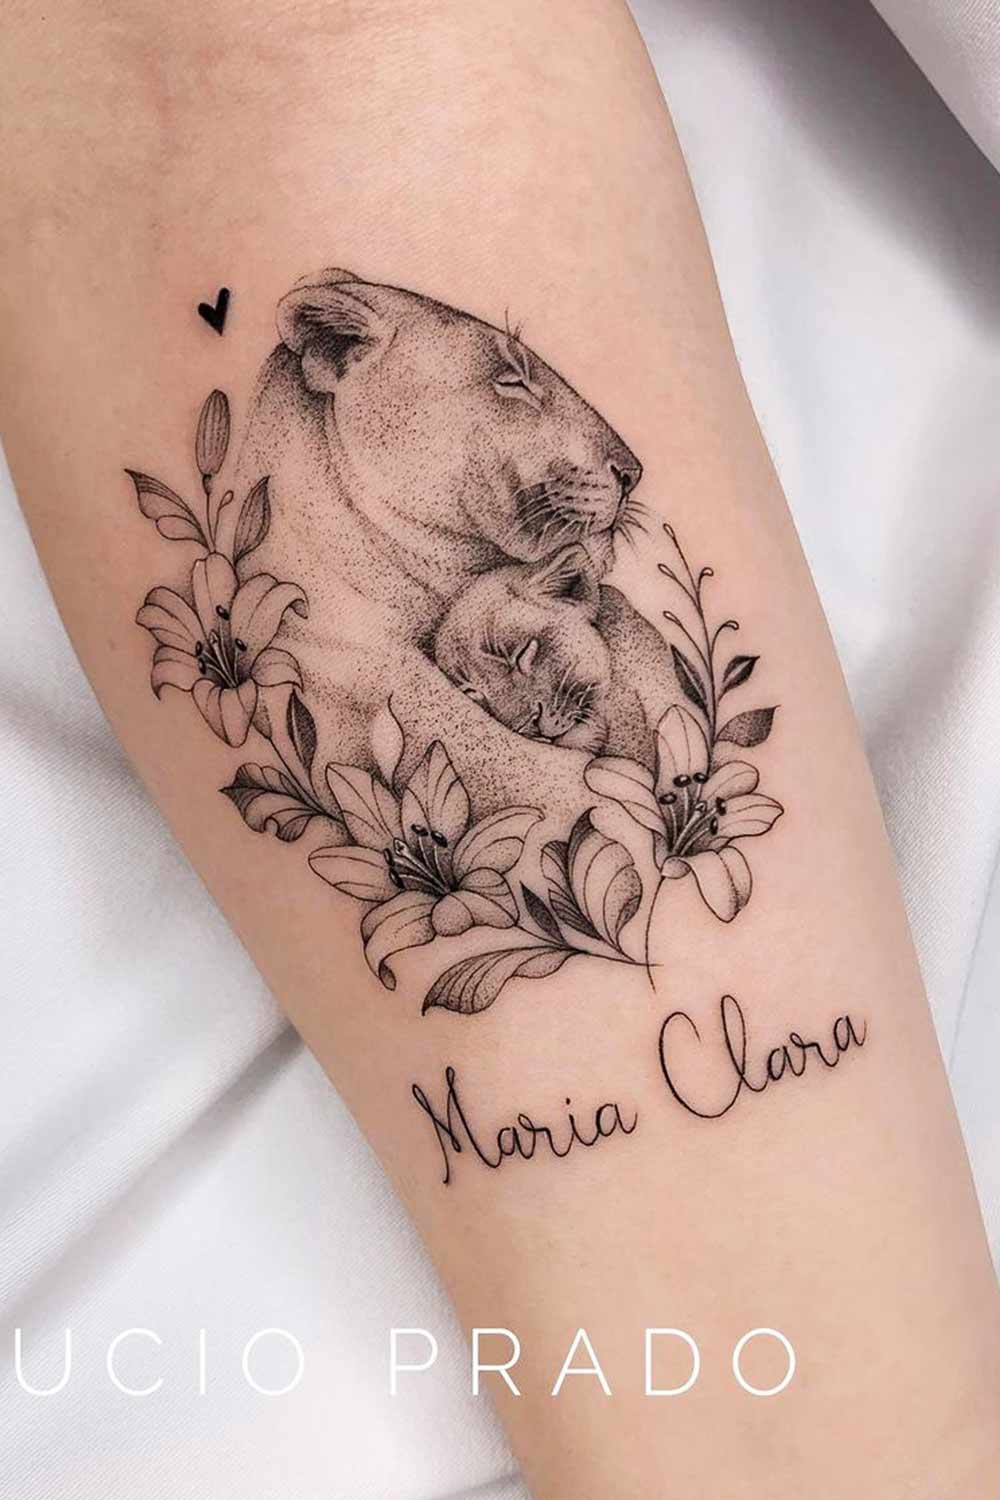 tatuagem-de-leoa-com-filhote-escrito-maria-clara 